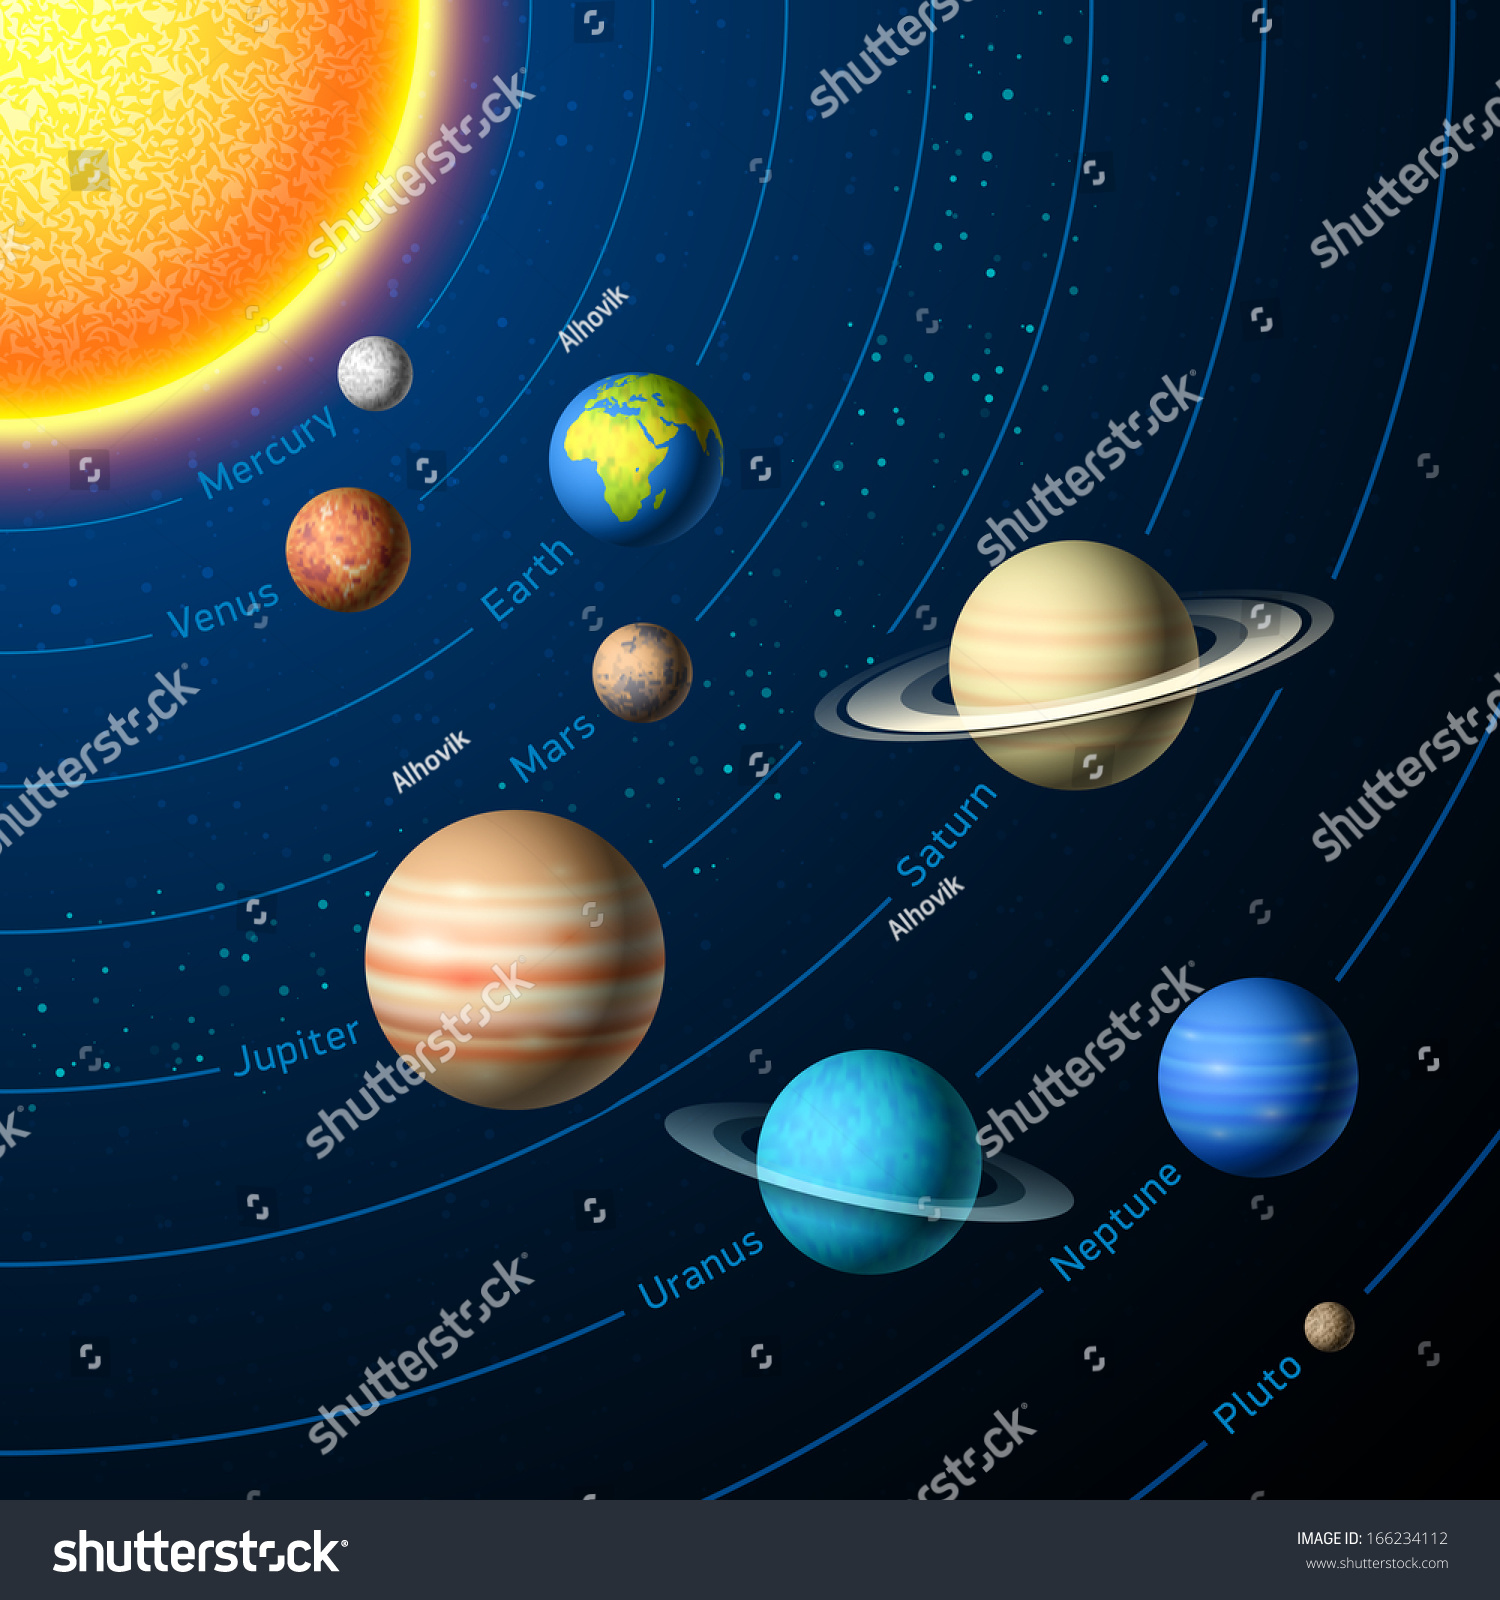 Solar System Planets. Vector. - 166234112 : Shutterstock